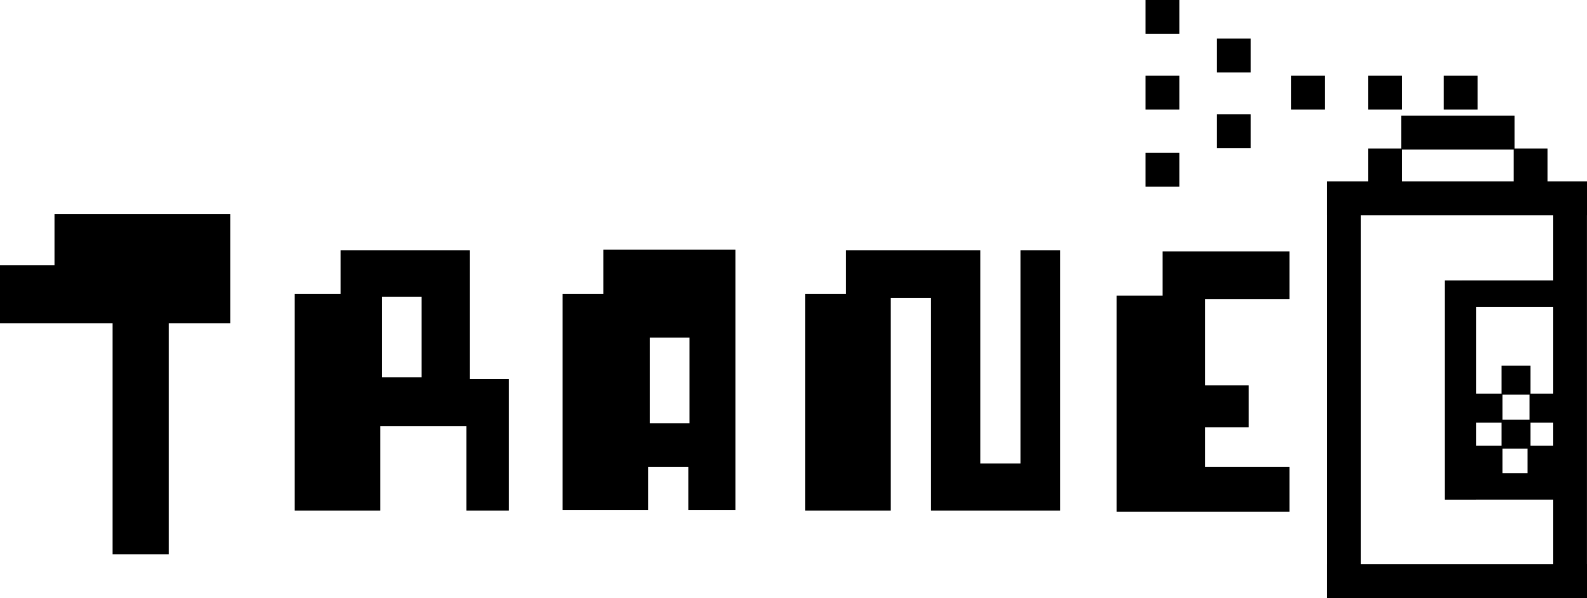 Trane Logo - Monochrome (1587x598), Png Download